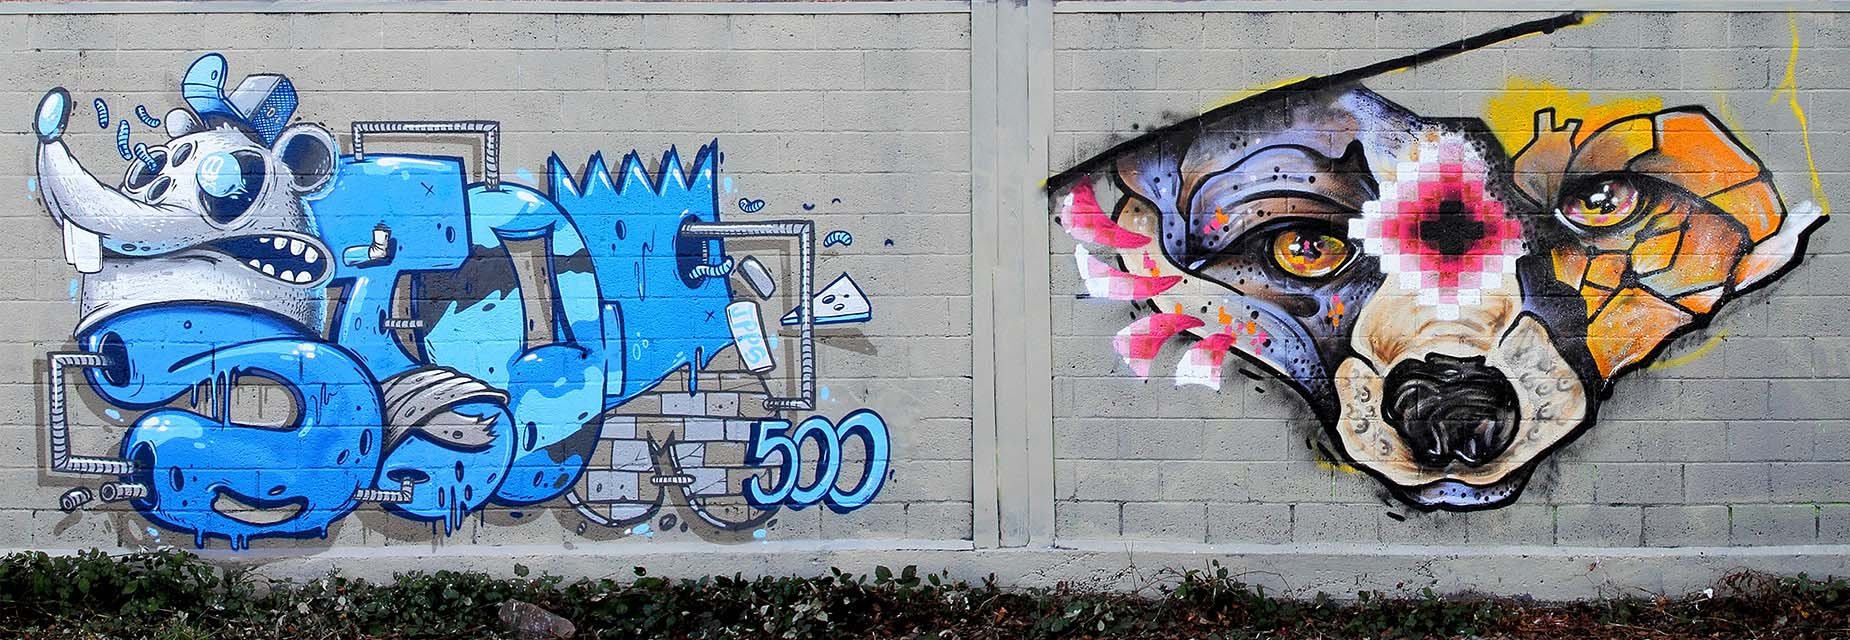 Большие граффити